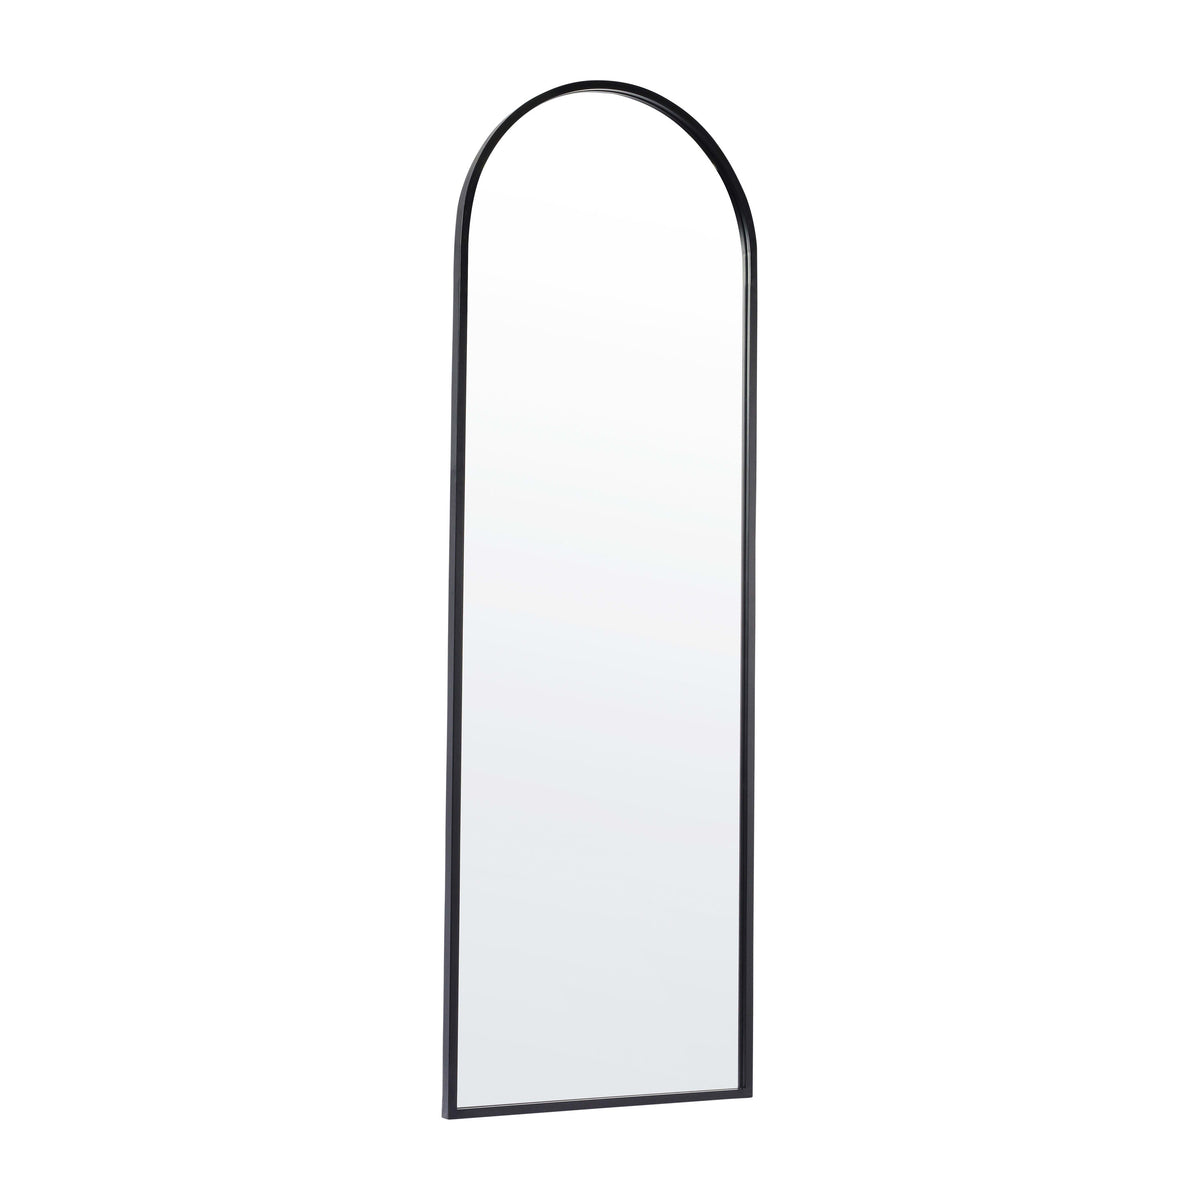 Black,22inchW x 65inchL |#| Full Floor Length Arched Mirror with Slim Black Metal Frame- 22inch x 65inch